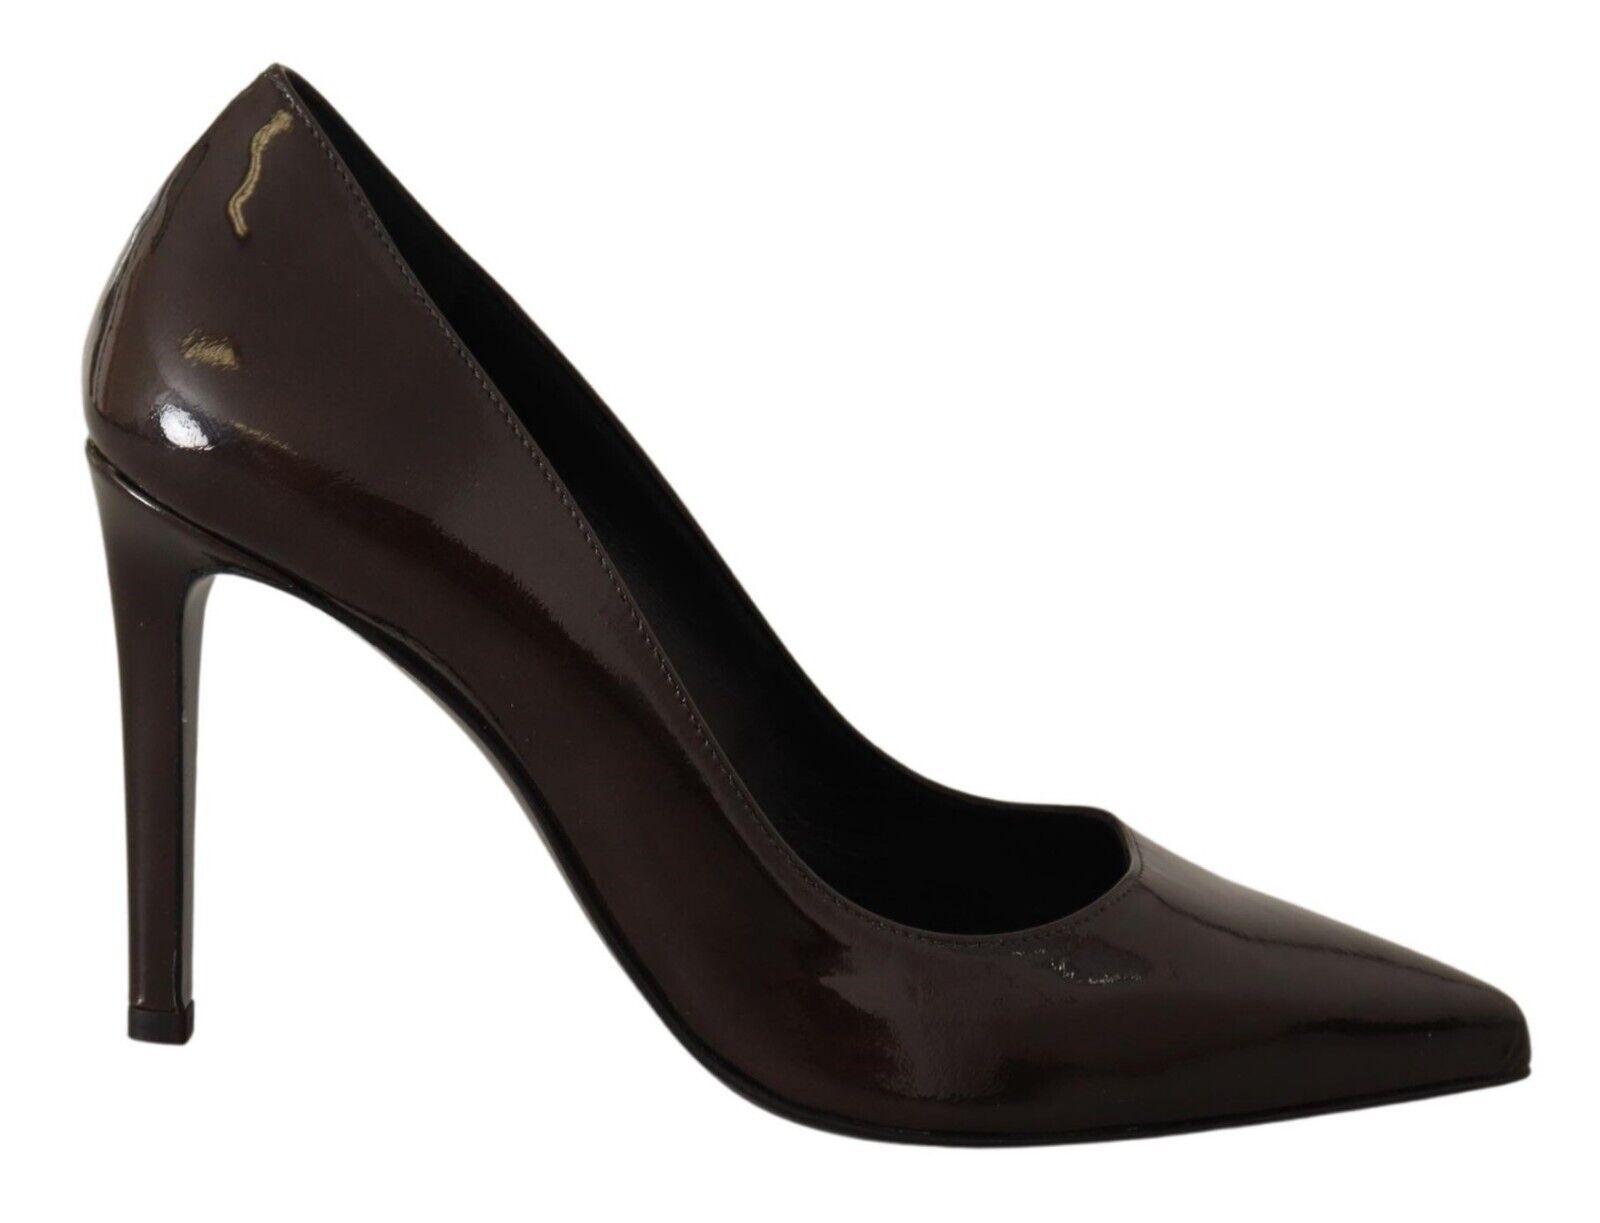 Sofia Brown Patent Leather Stiletto Heels Pumps Shoes - Fizigo